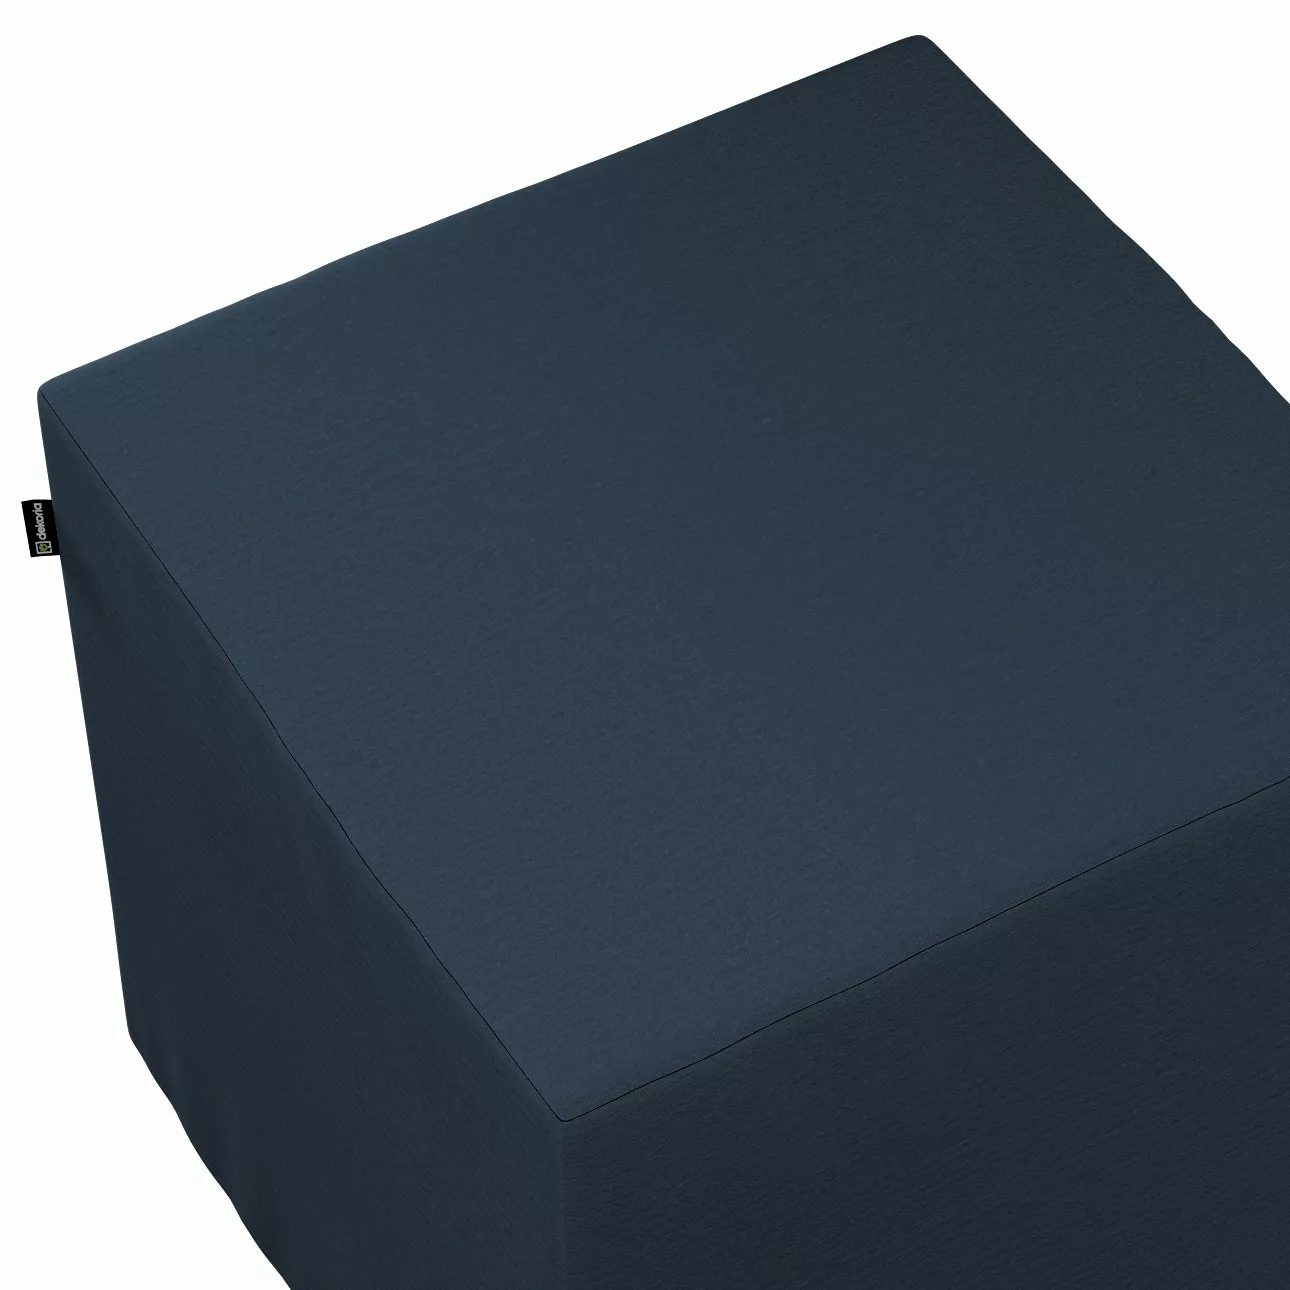 Bezug für Sitzwürfel, marinenblau, Bezug für Sitzwürfel 40 x 40 x 40 cm, Qu günstig online kaufen